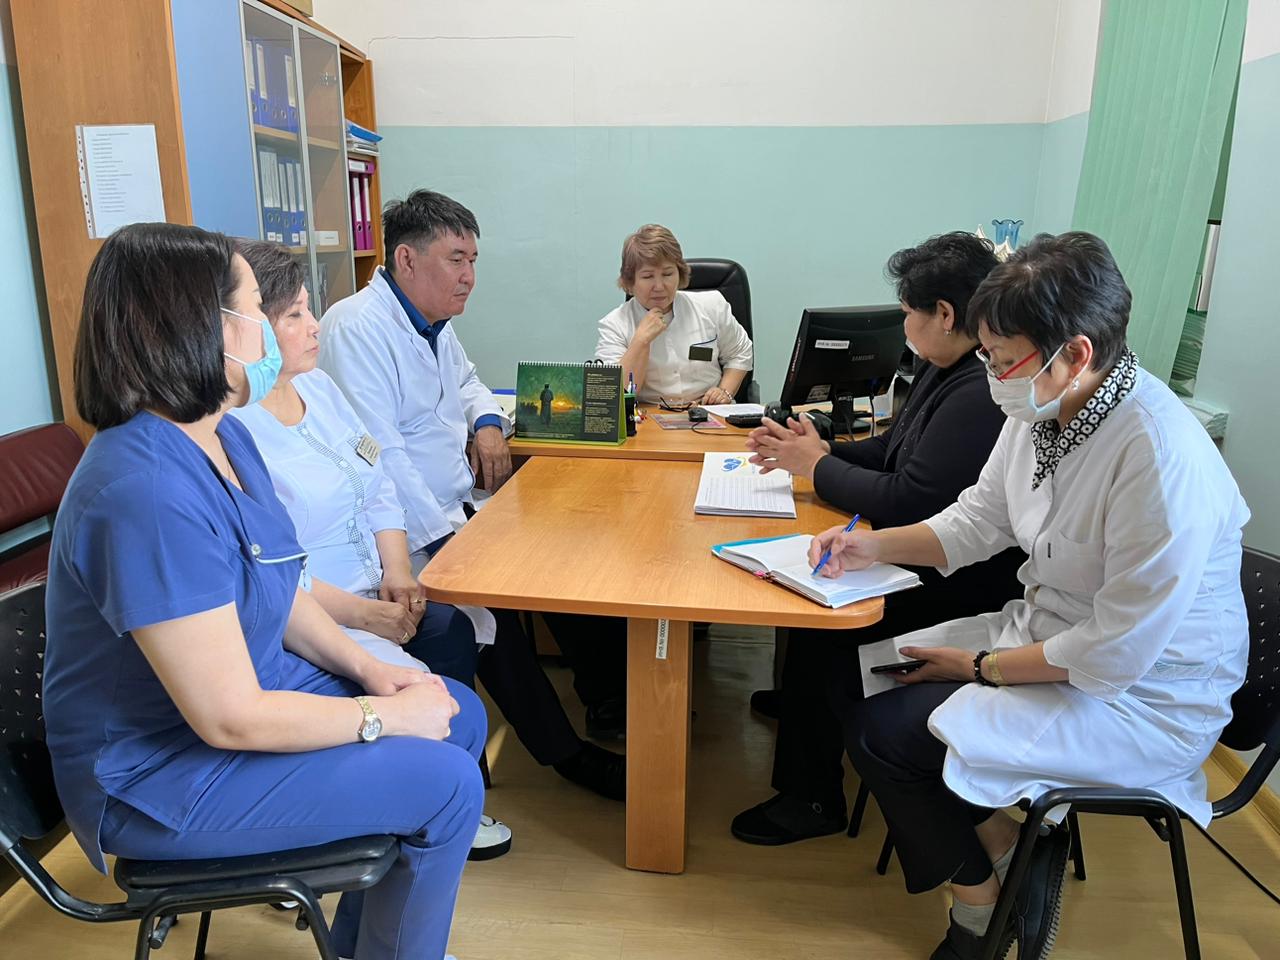 О оказании практической помощи областными специалистами региональным медицинским работникам по актуальным вопросам иммунопрофилактики